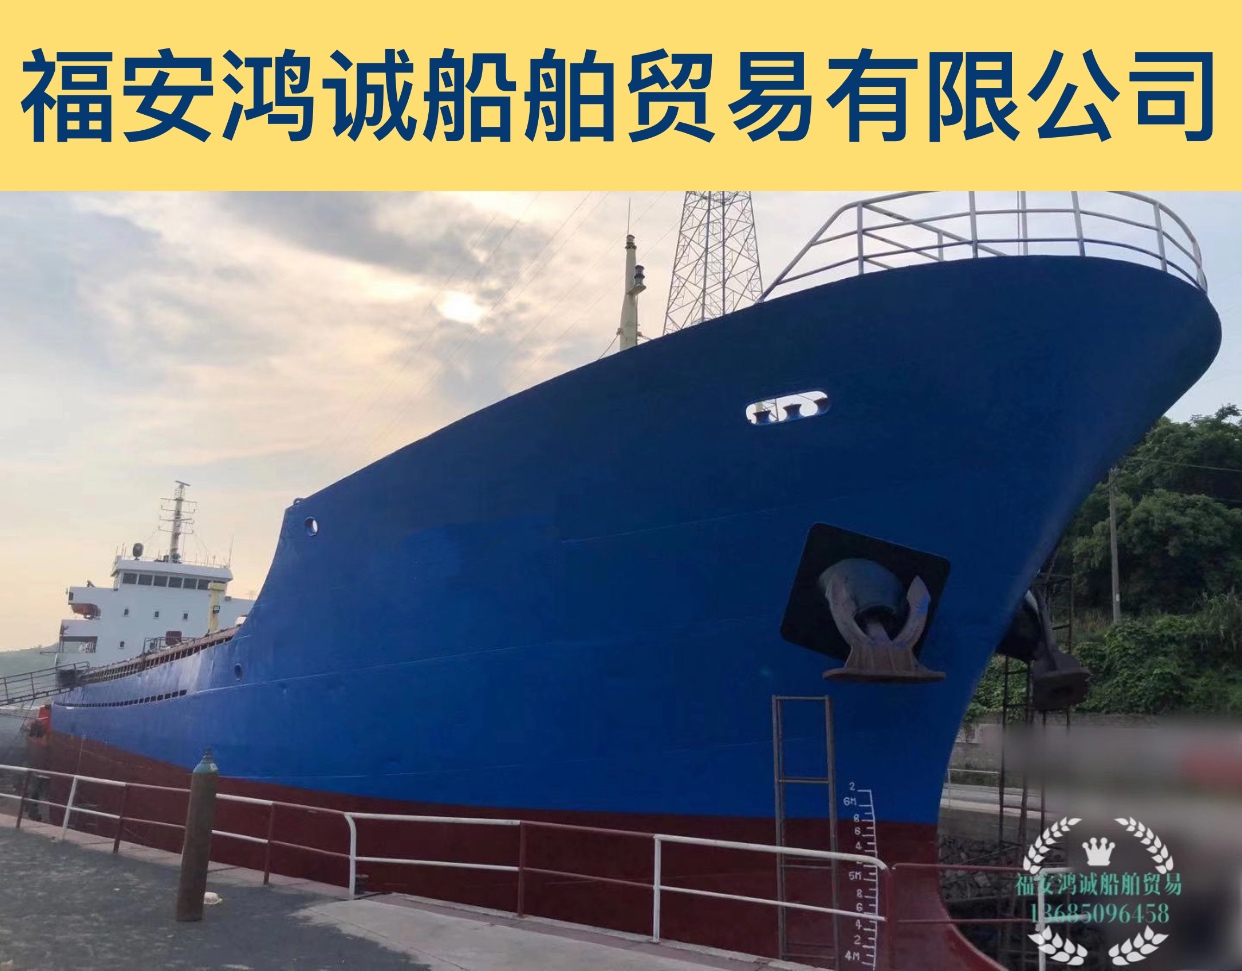 出售4200吨干货船